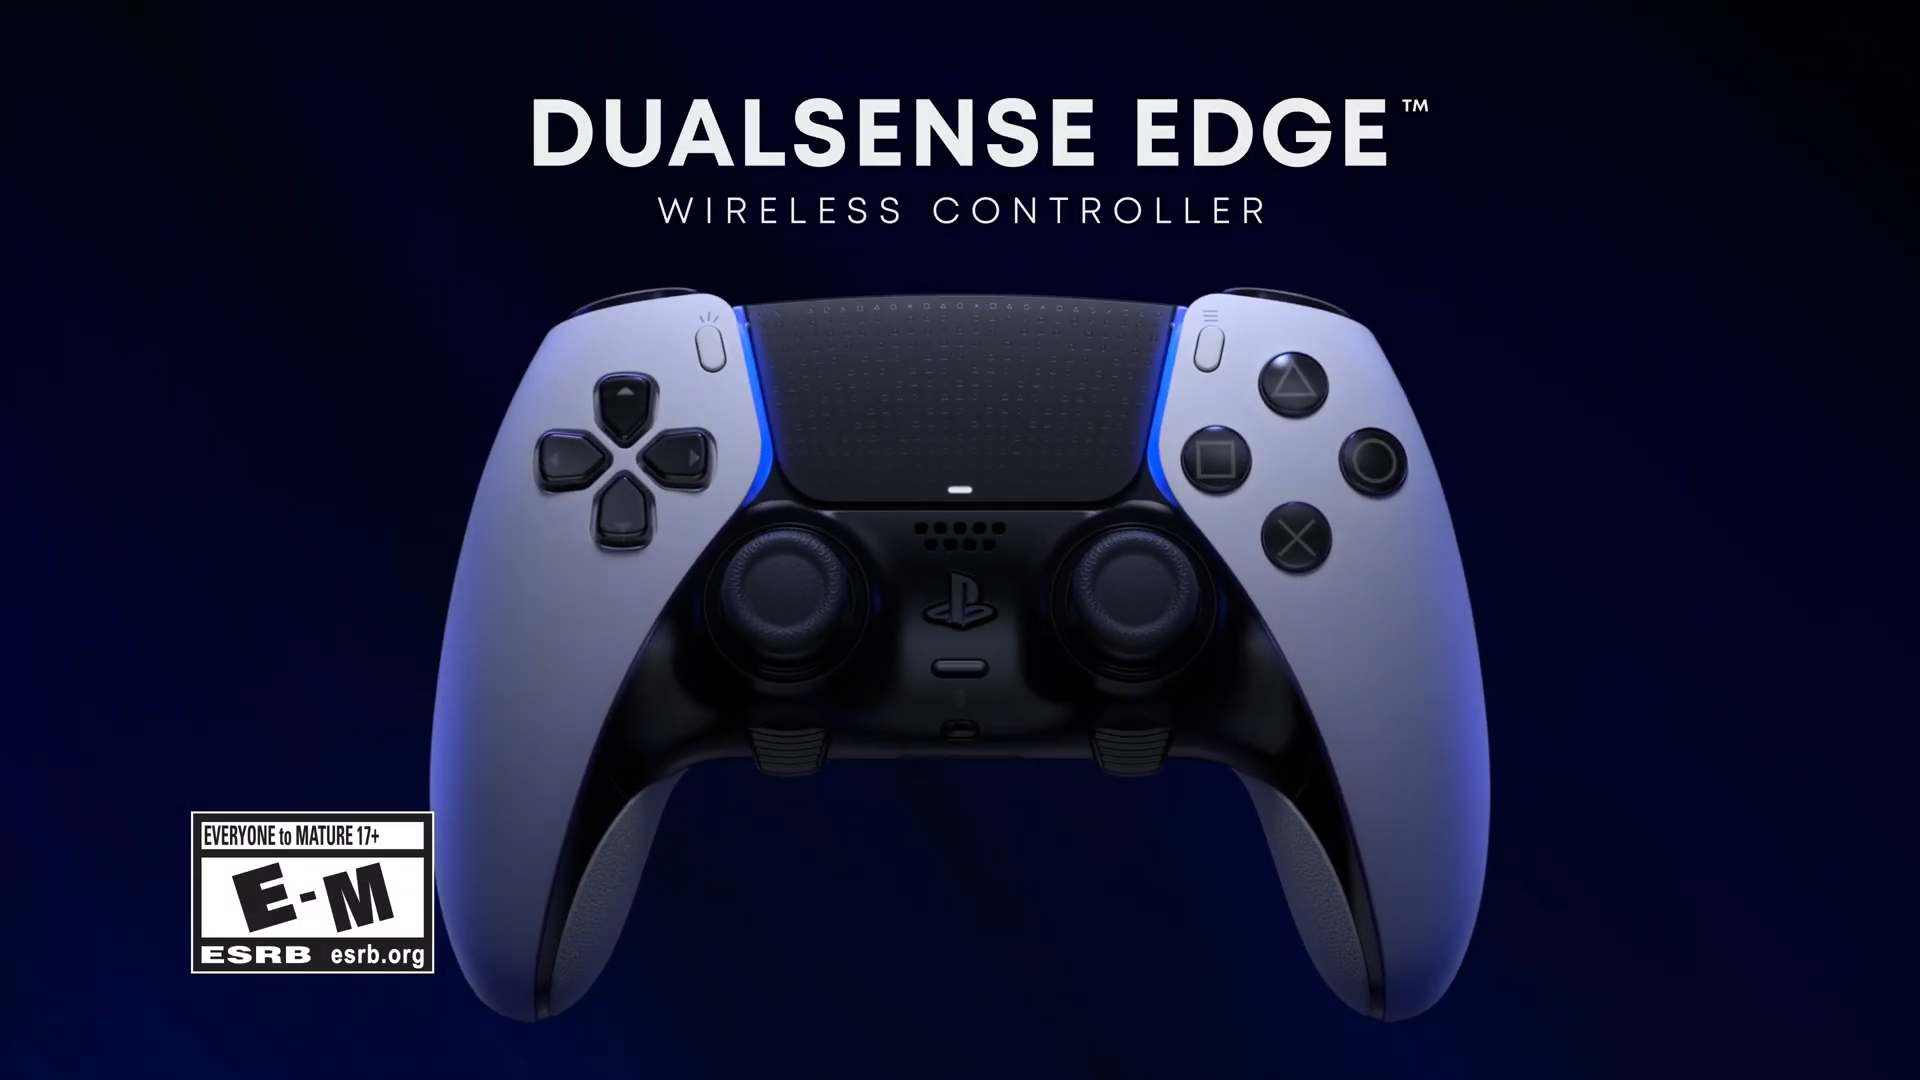 Novo comando DualSense Edge para a PS5 chega em janeiro, mas custa